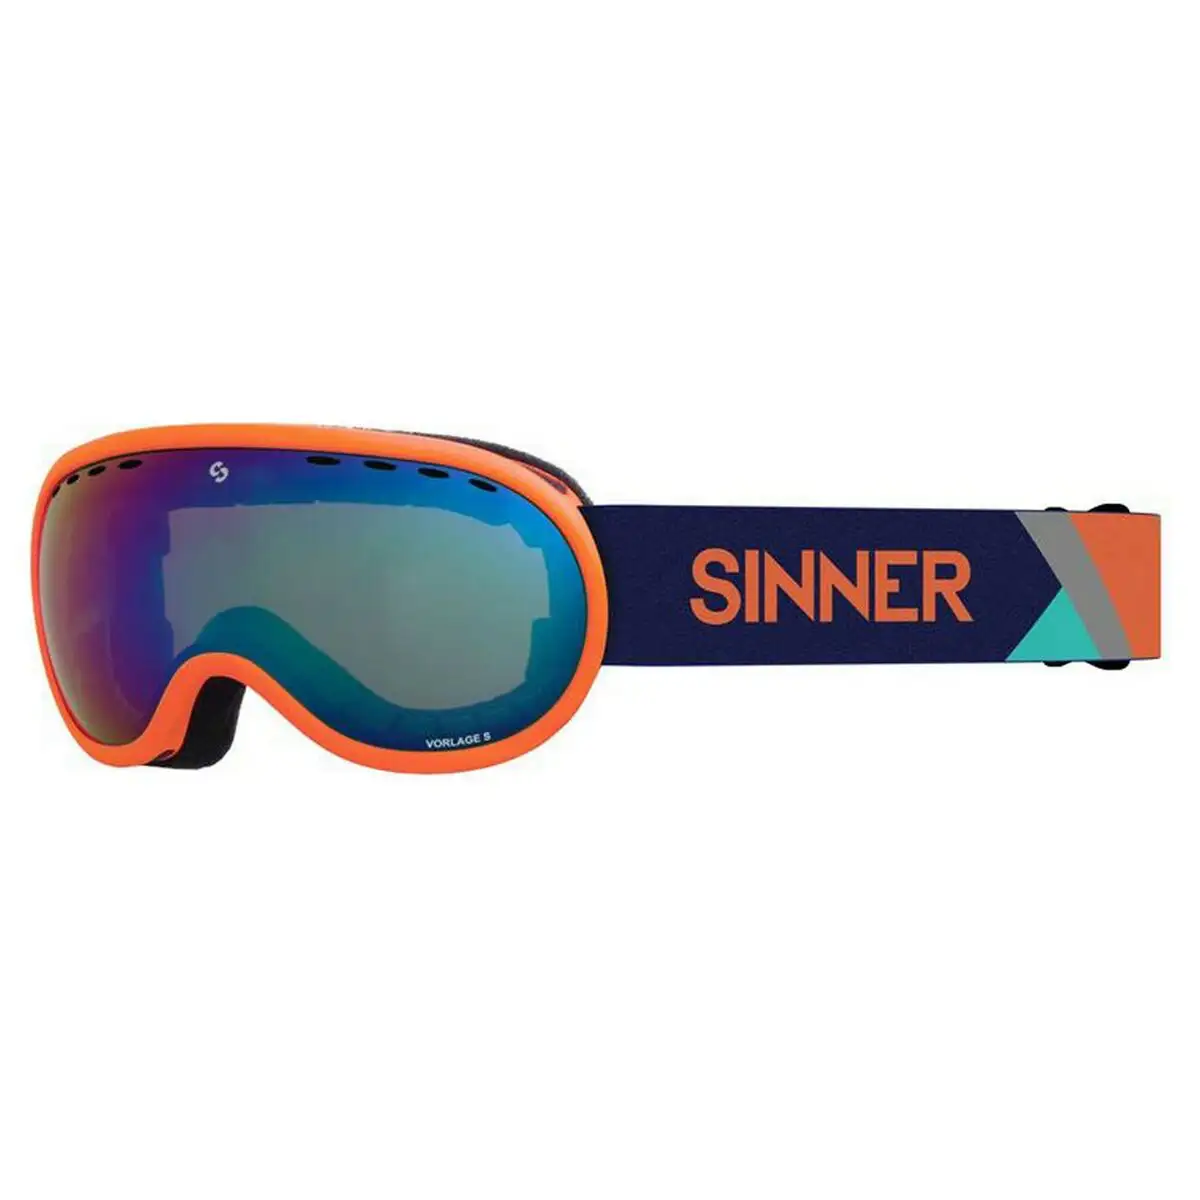 Lunettes de ski sinner 331001910 orange compose_5992. DIAYTAR SENEGAL - Là où Chaque Clic Compte. Parcourez notre boutique en ligne et laissez-vous guider vers des trouvailles uniques qui enrichiront votre quotidien.